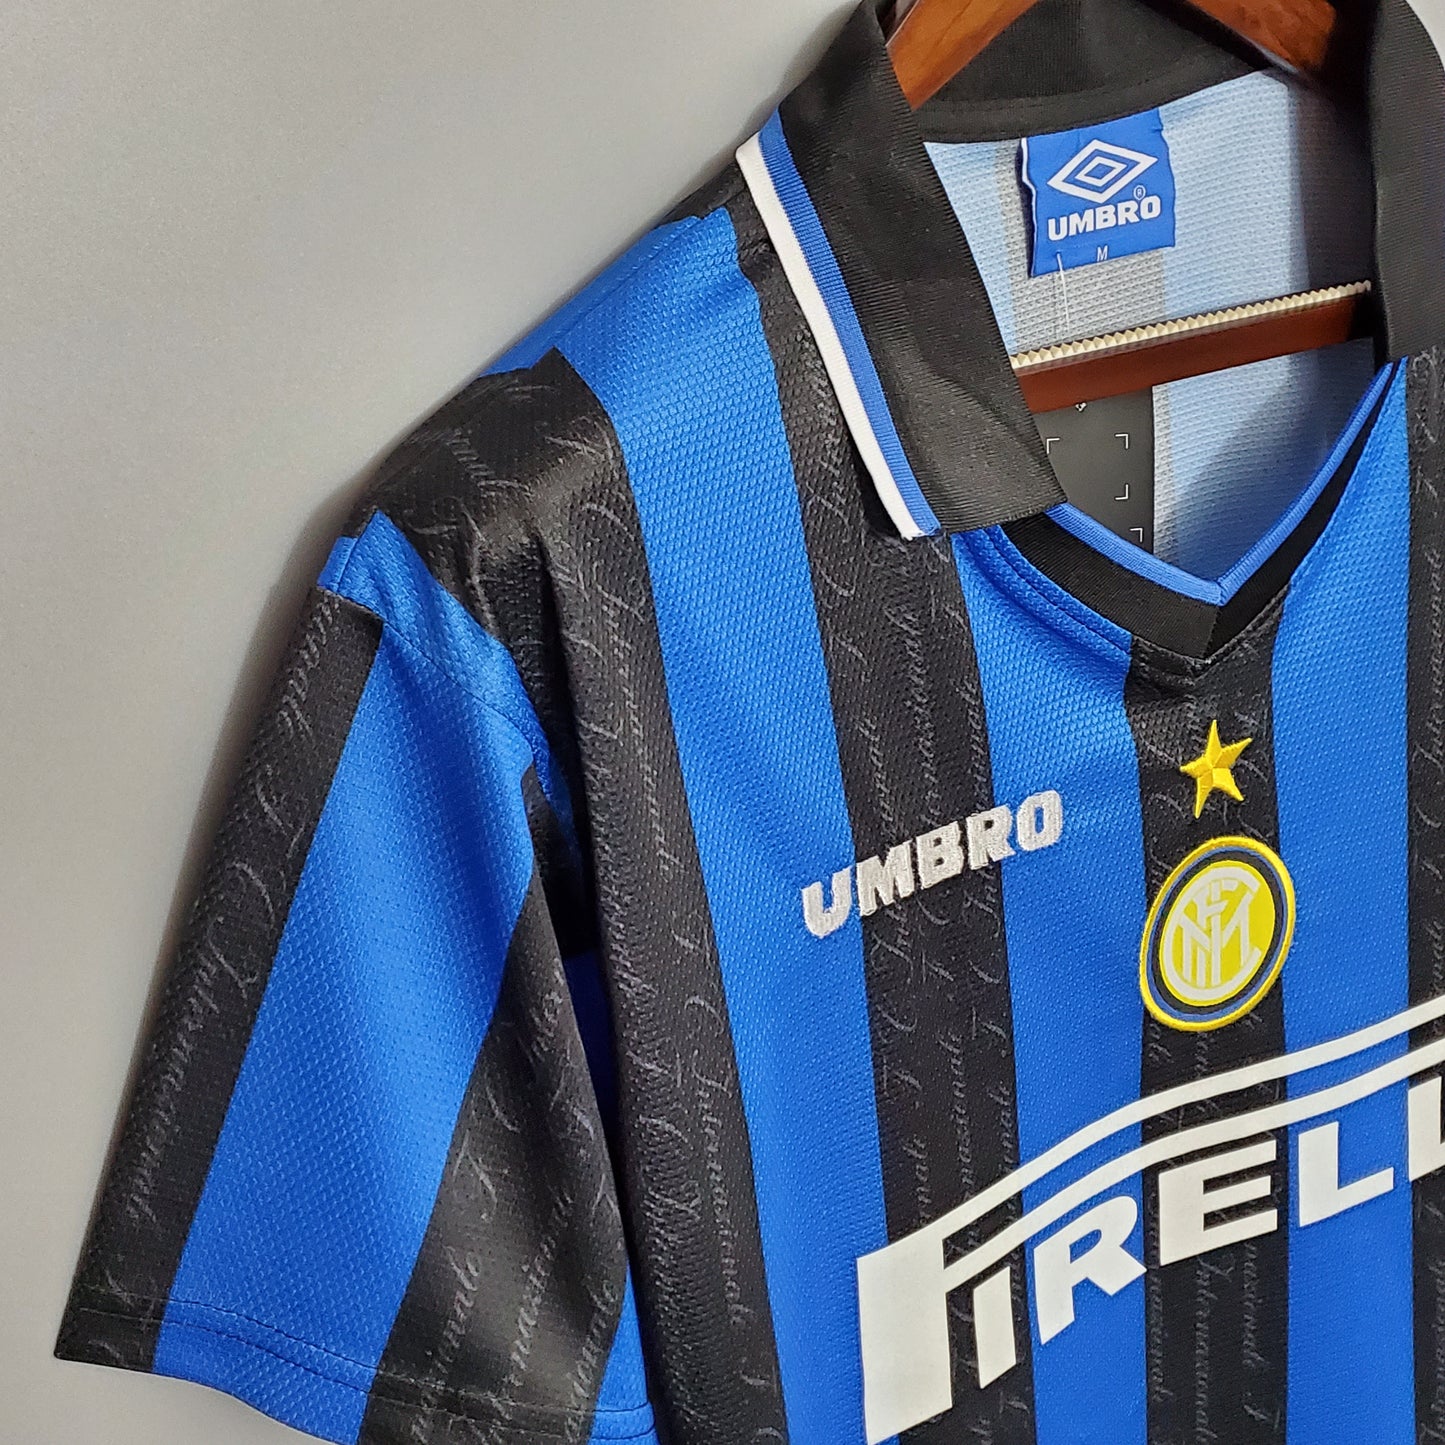 Inter Milan 97-98 Home Shirt